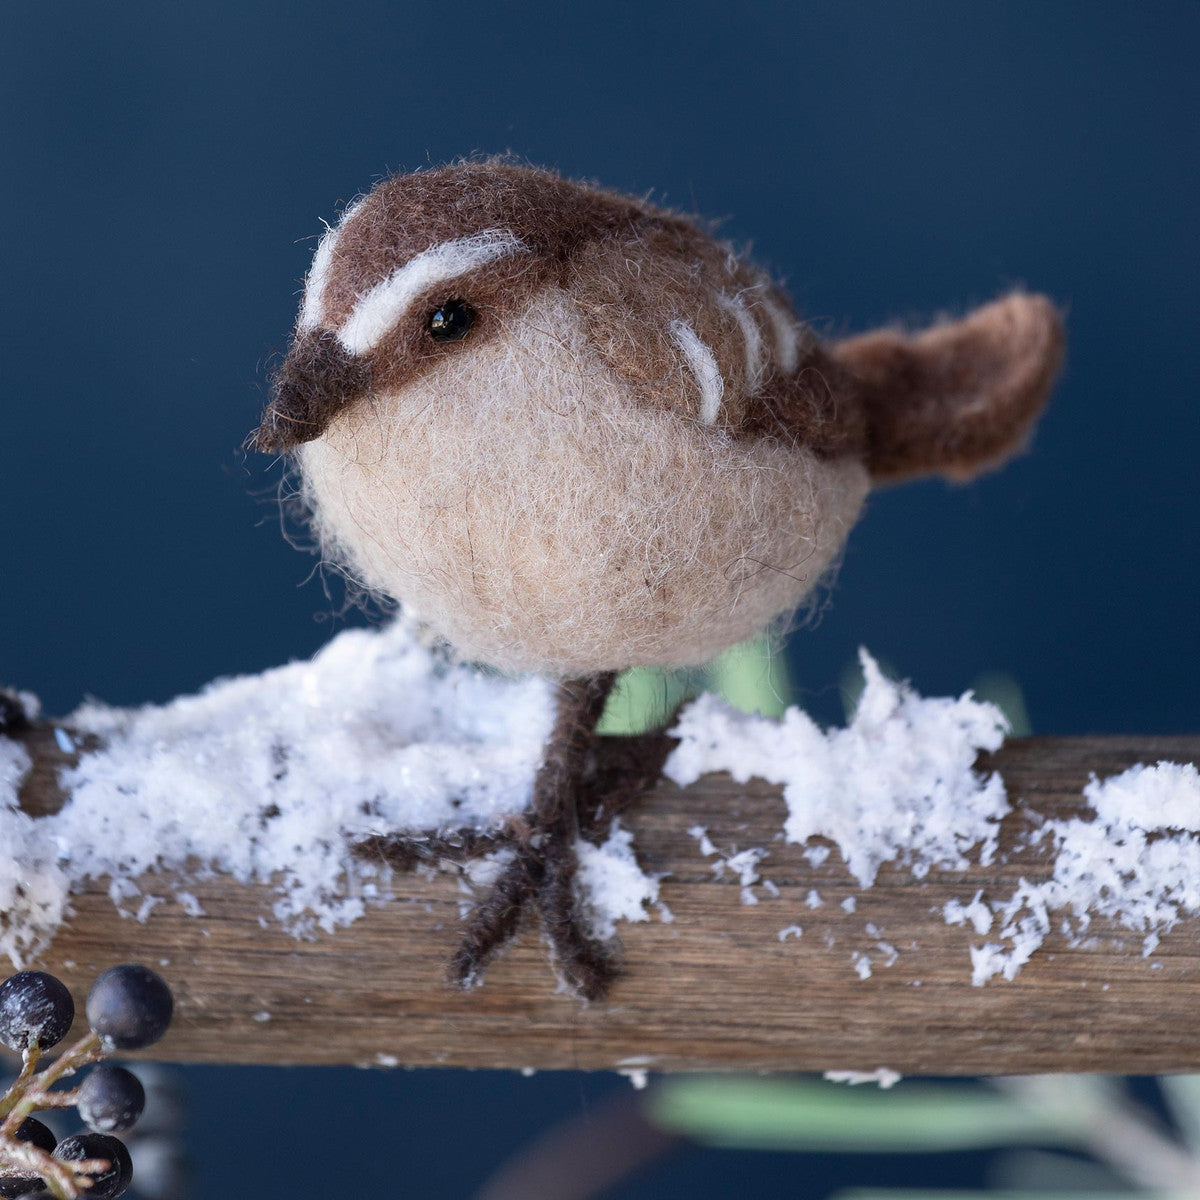 Wool Brown Wren Bird- More Coming Soon!